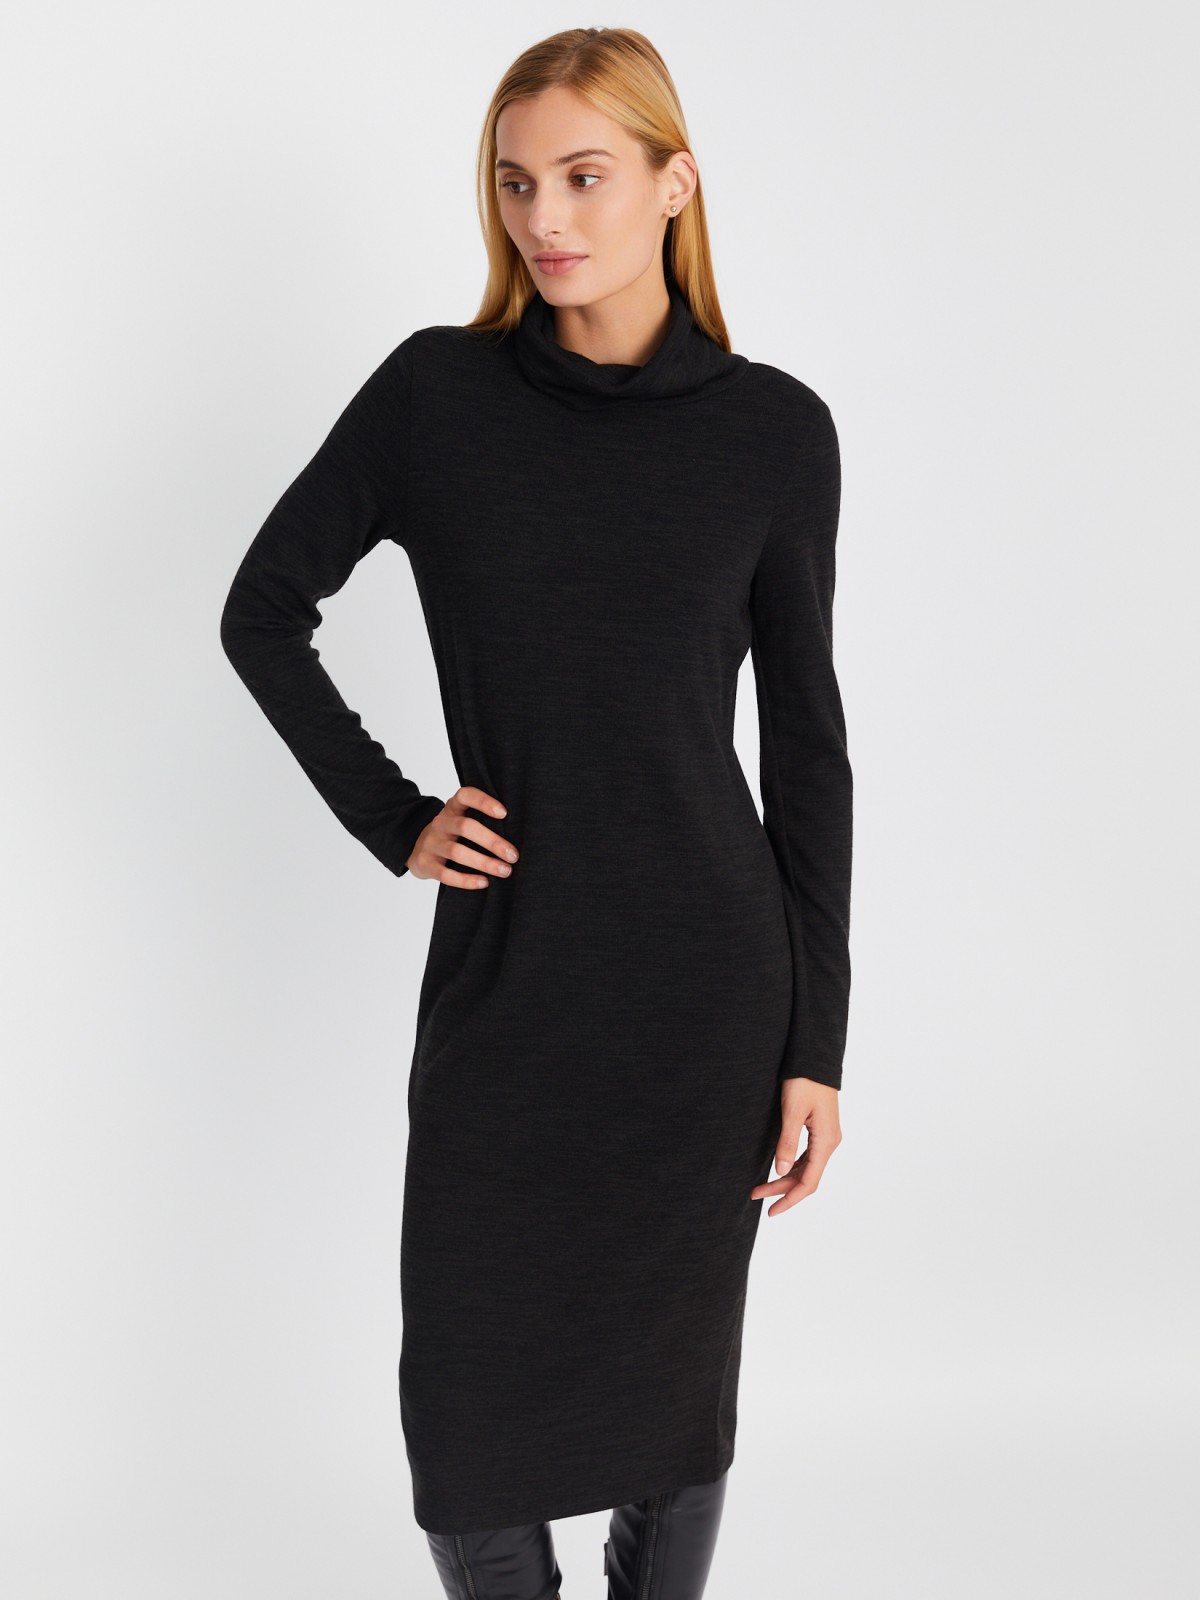 Трикотажное платье-свитер длины миди с высоким горлом zolla 02334819F062, цвет темно-серый, размер XS - фото 1